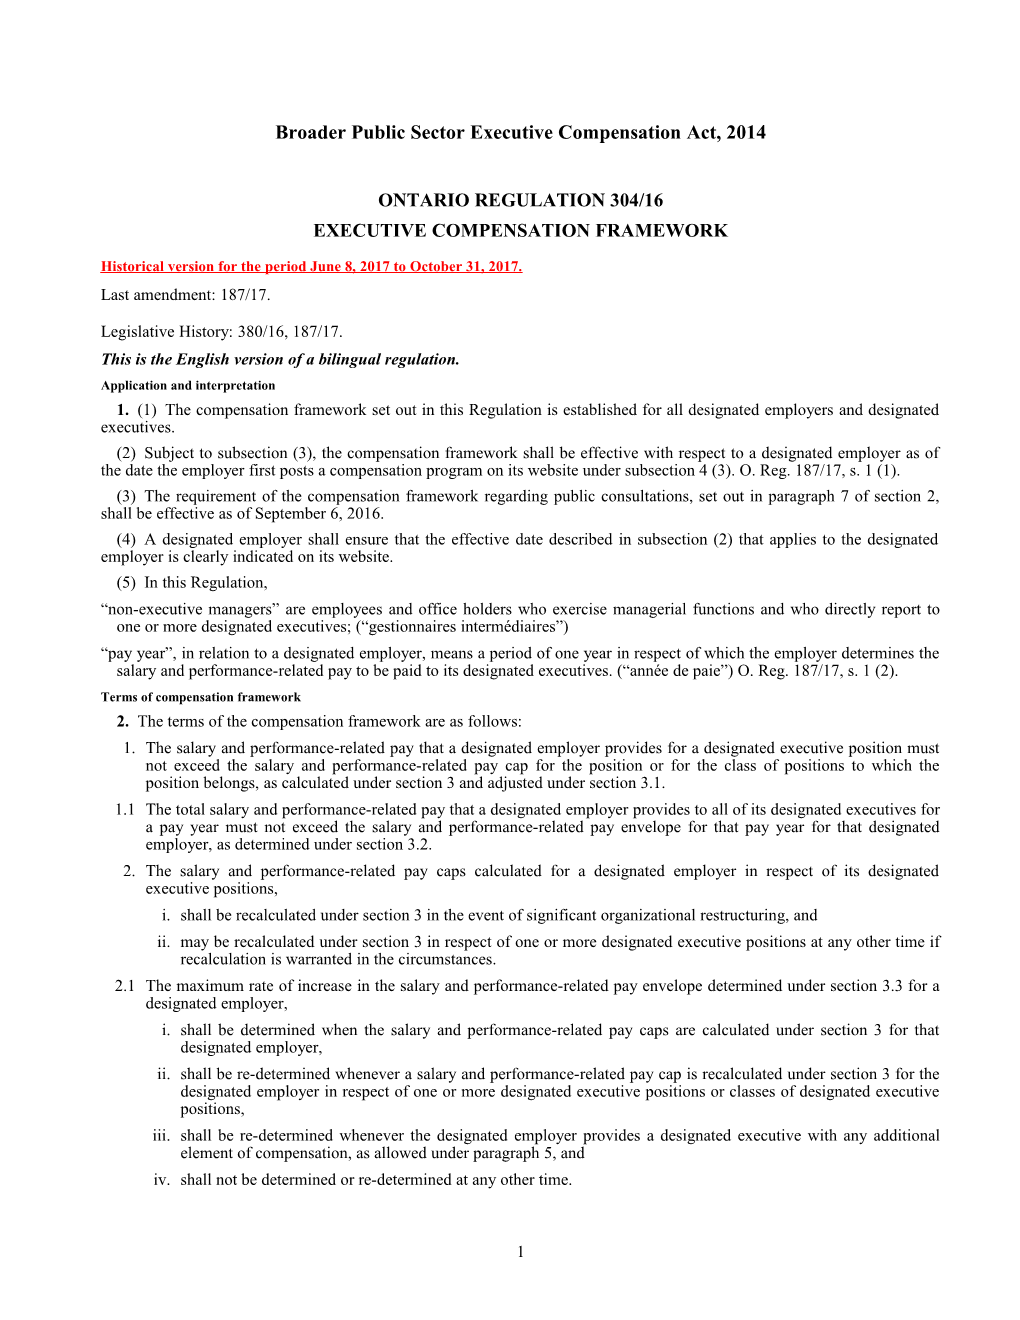 Broader Public Sector Executive Compensation Act, 2014 - O. Reg. 304/16